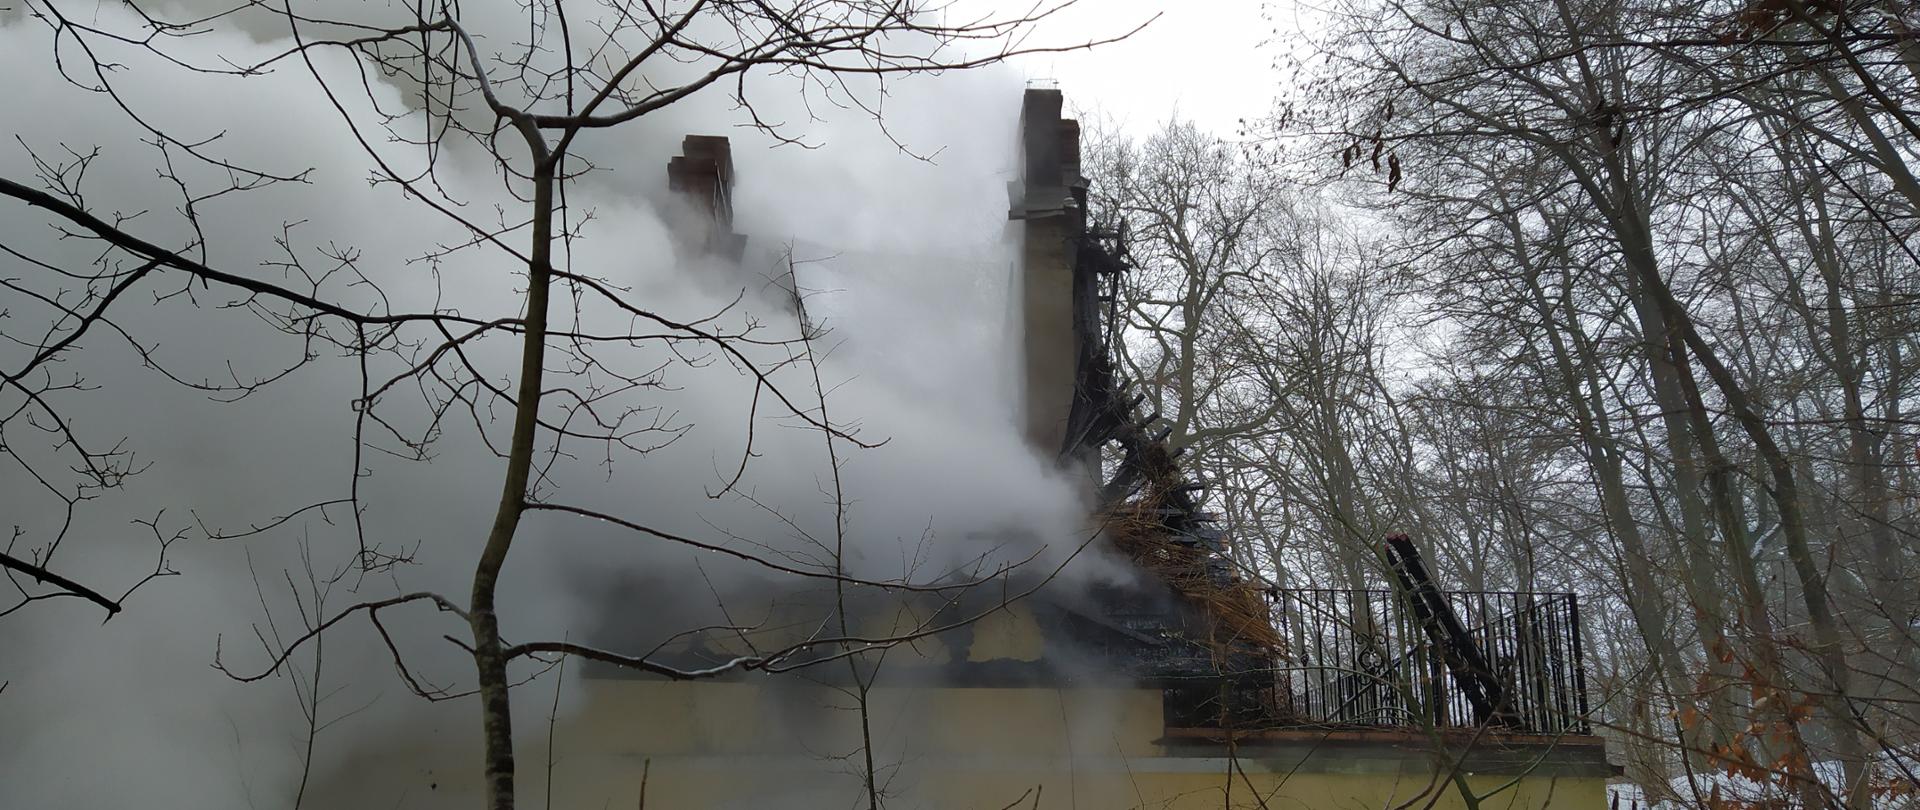 Pożar budynku mieszkalnego w miejscowości Policko (gm. Manowo). Paląca się konstrukcja i przekrycie dachu.